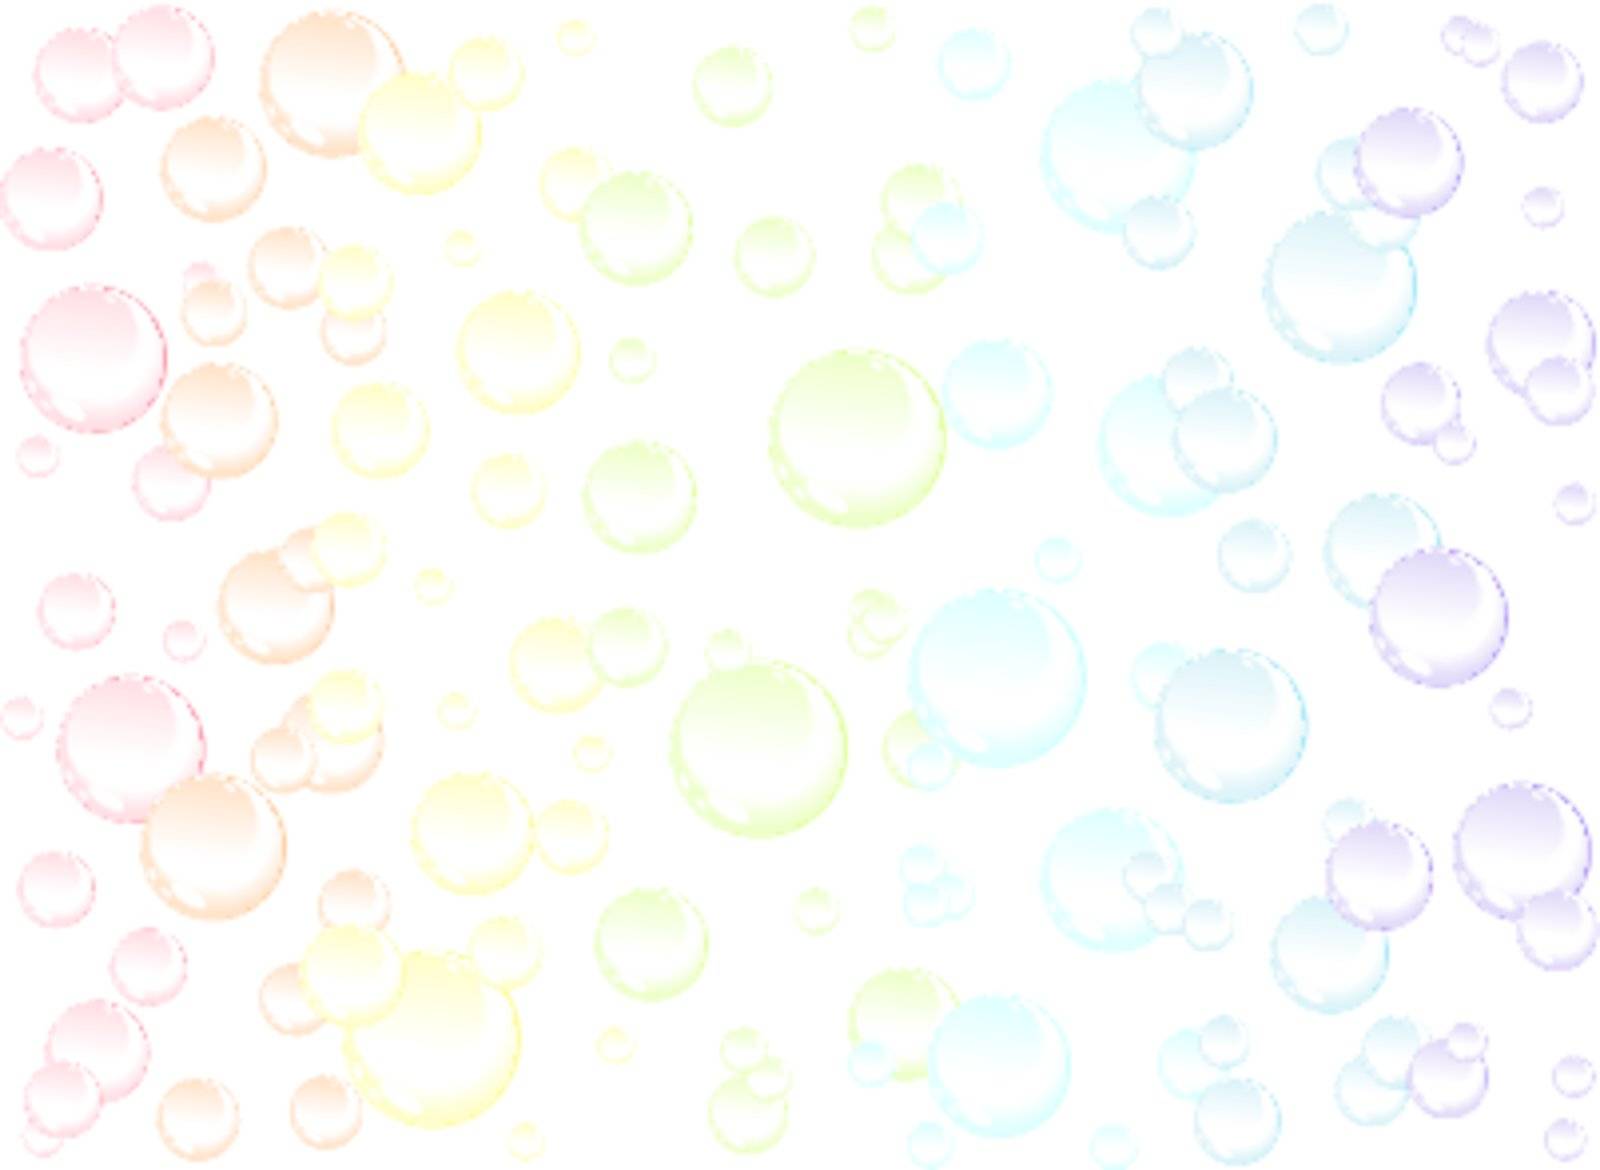 bubbles background by svtrotof